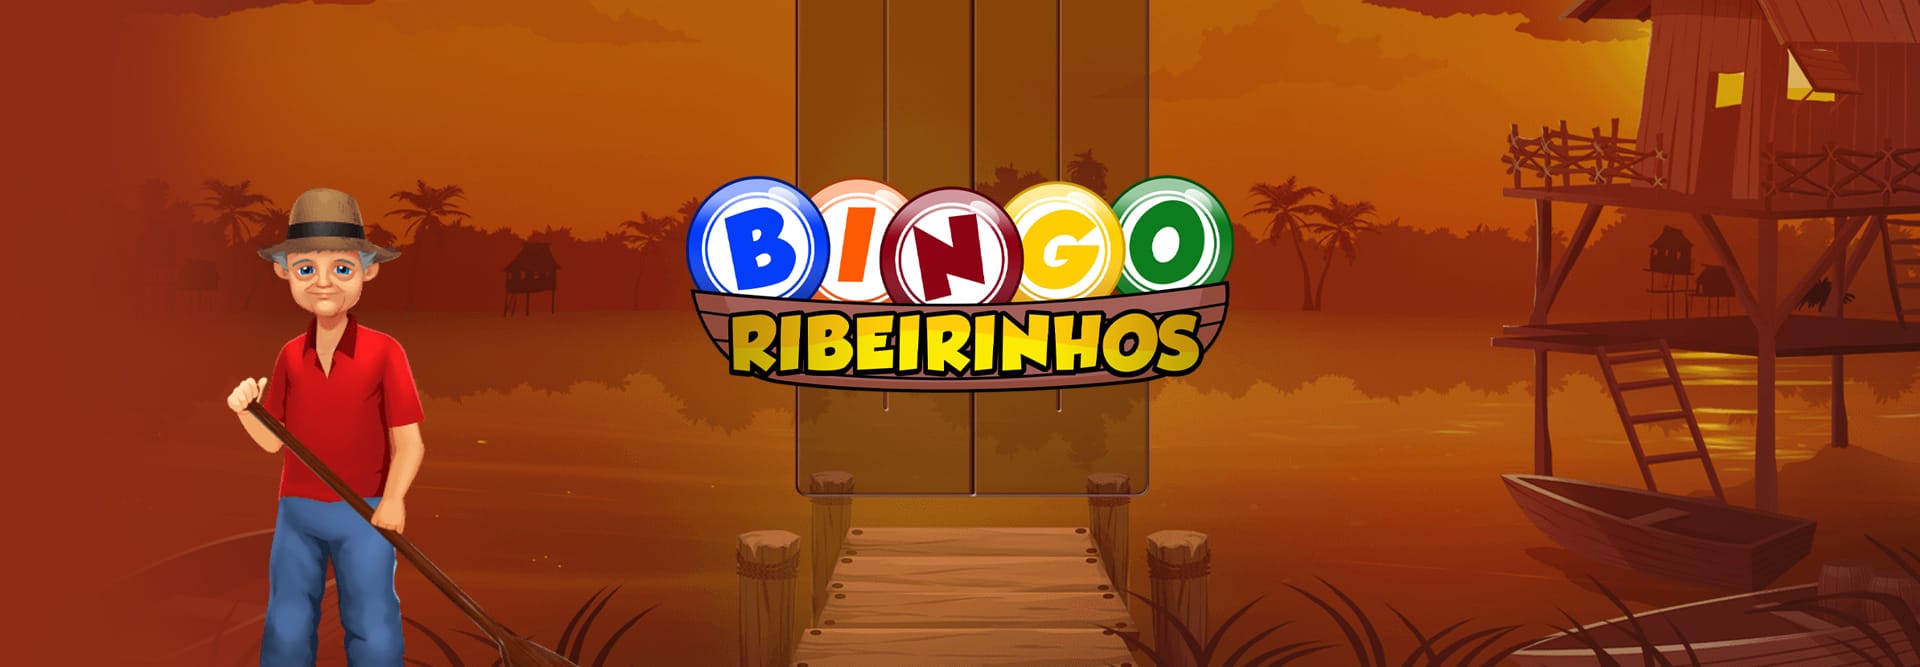 Bingo Ribeirinhos game banner